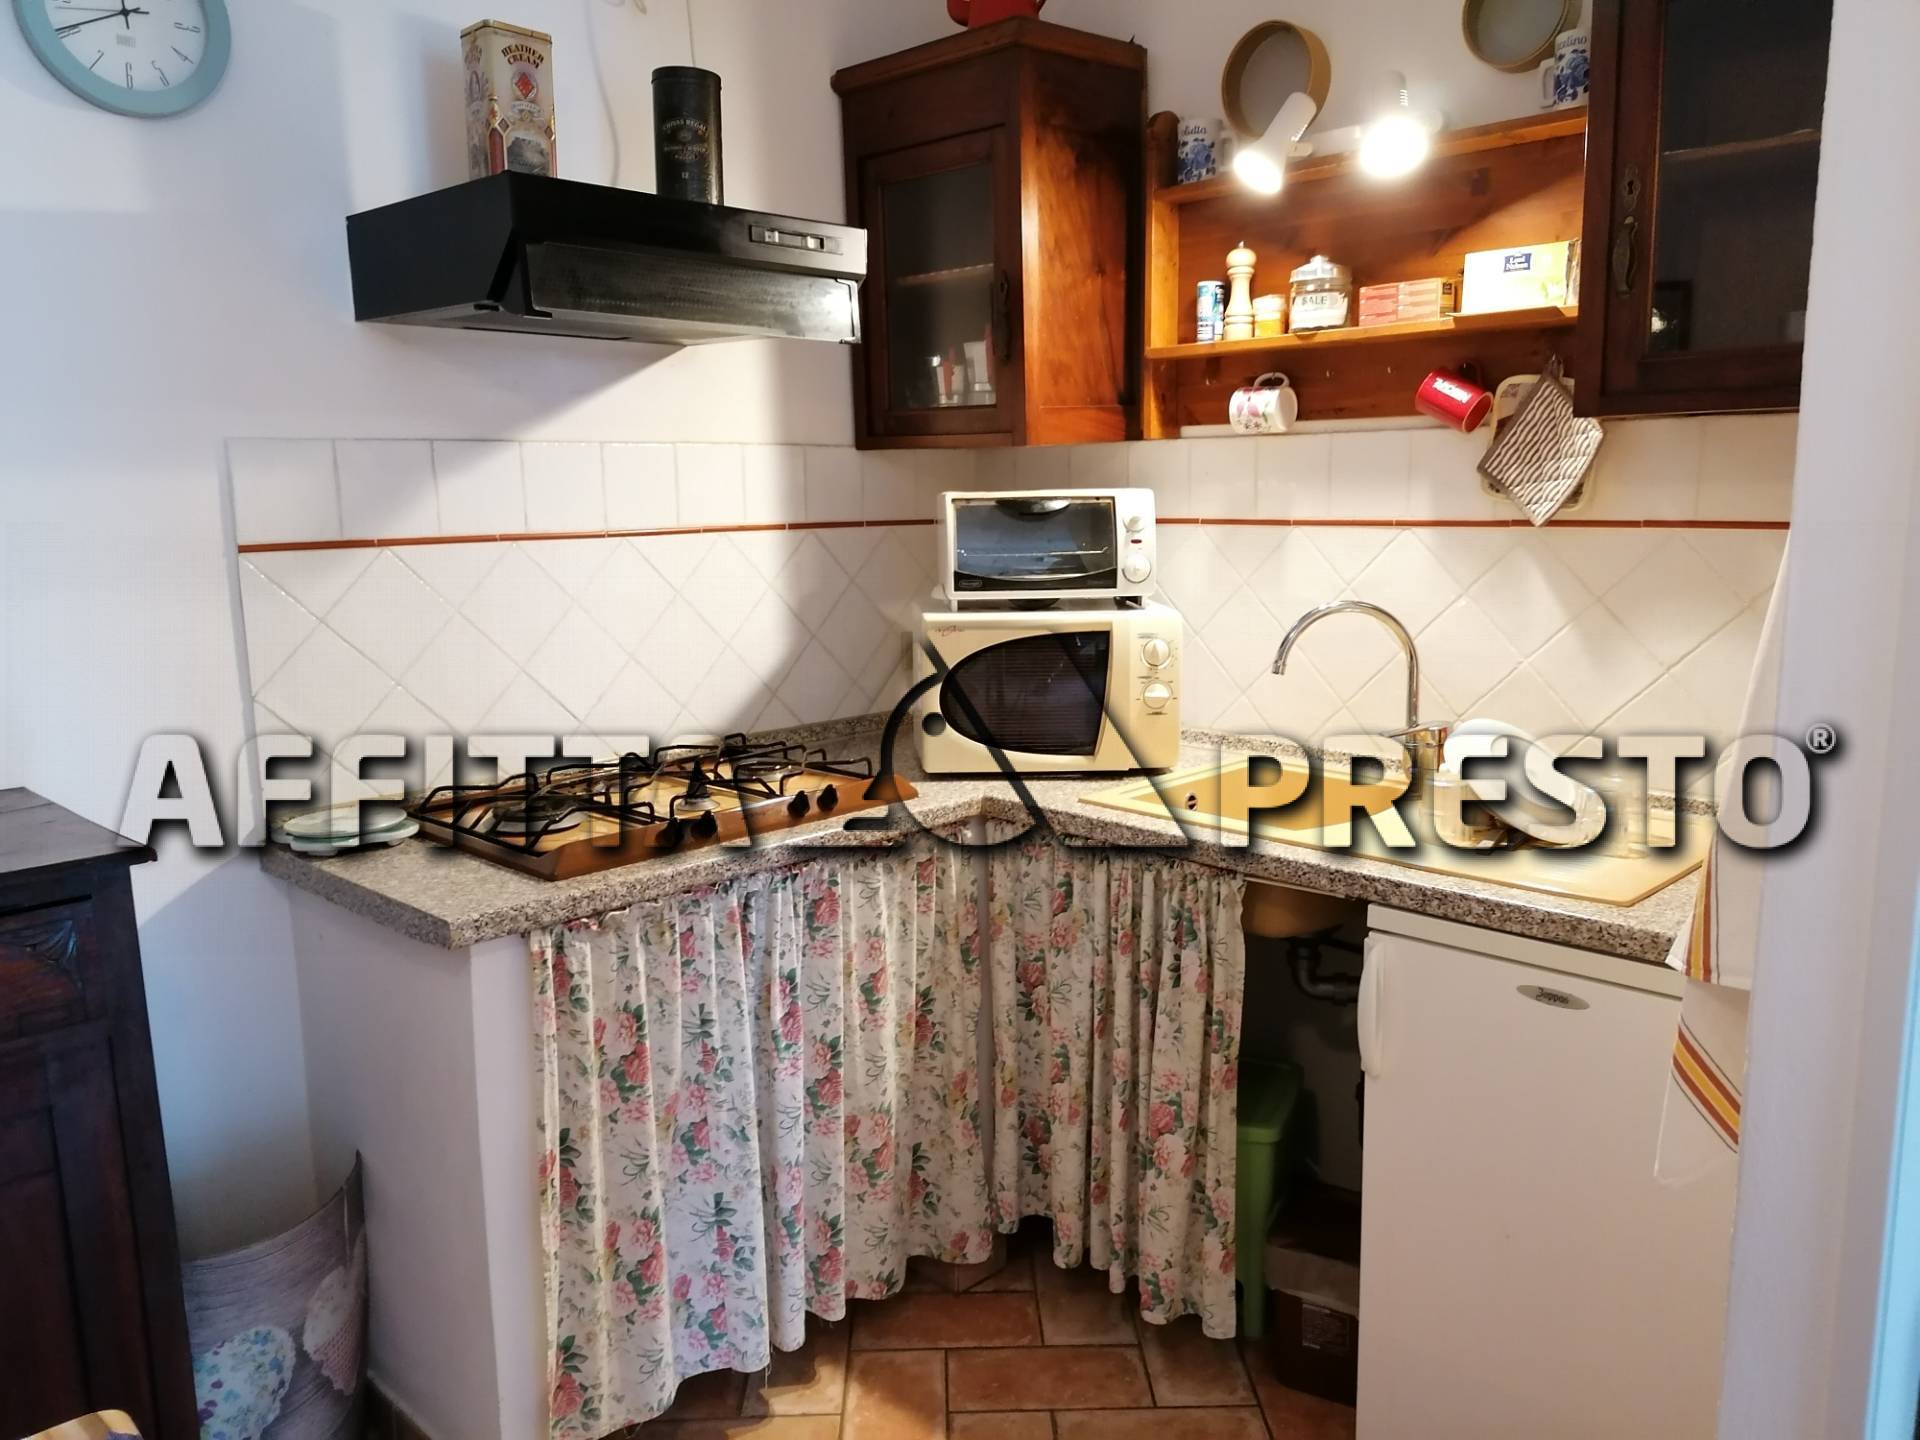 Appartamento in affitto a Fauglia, 2 locali, zona Località: Fauglia, Trattative riservate | CambioCasa.it